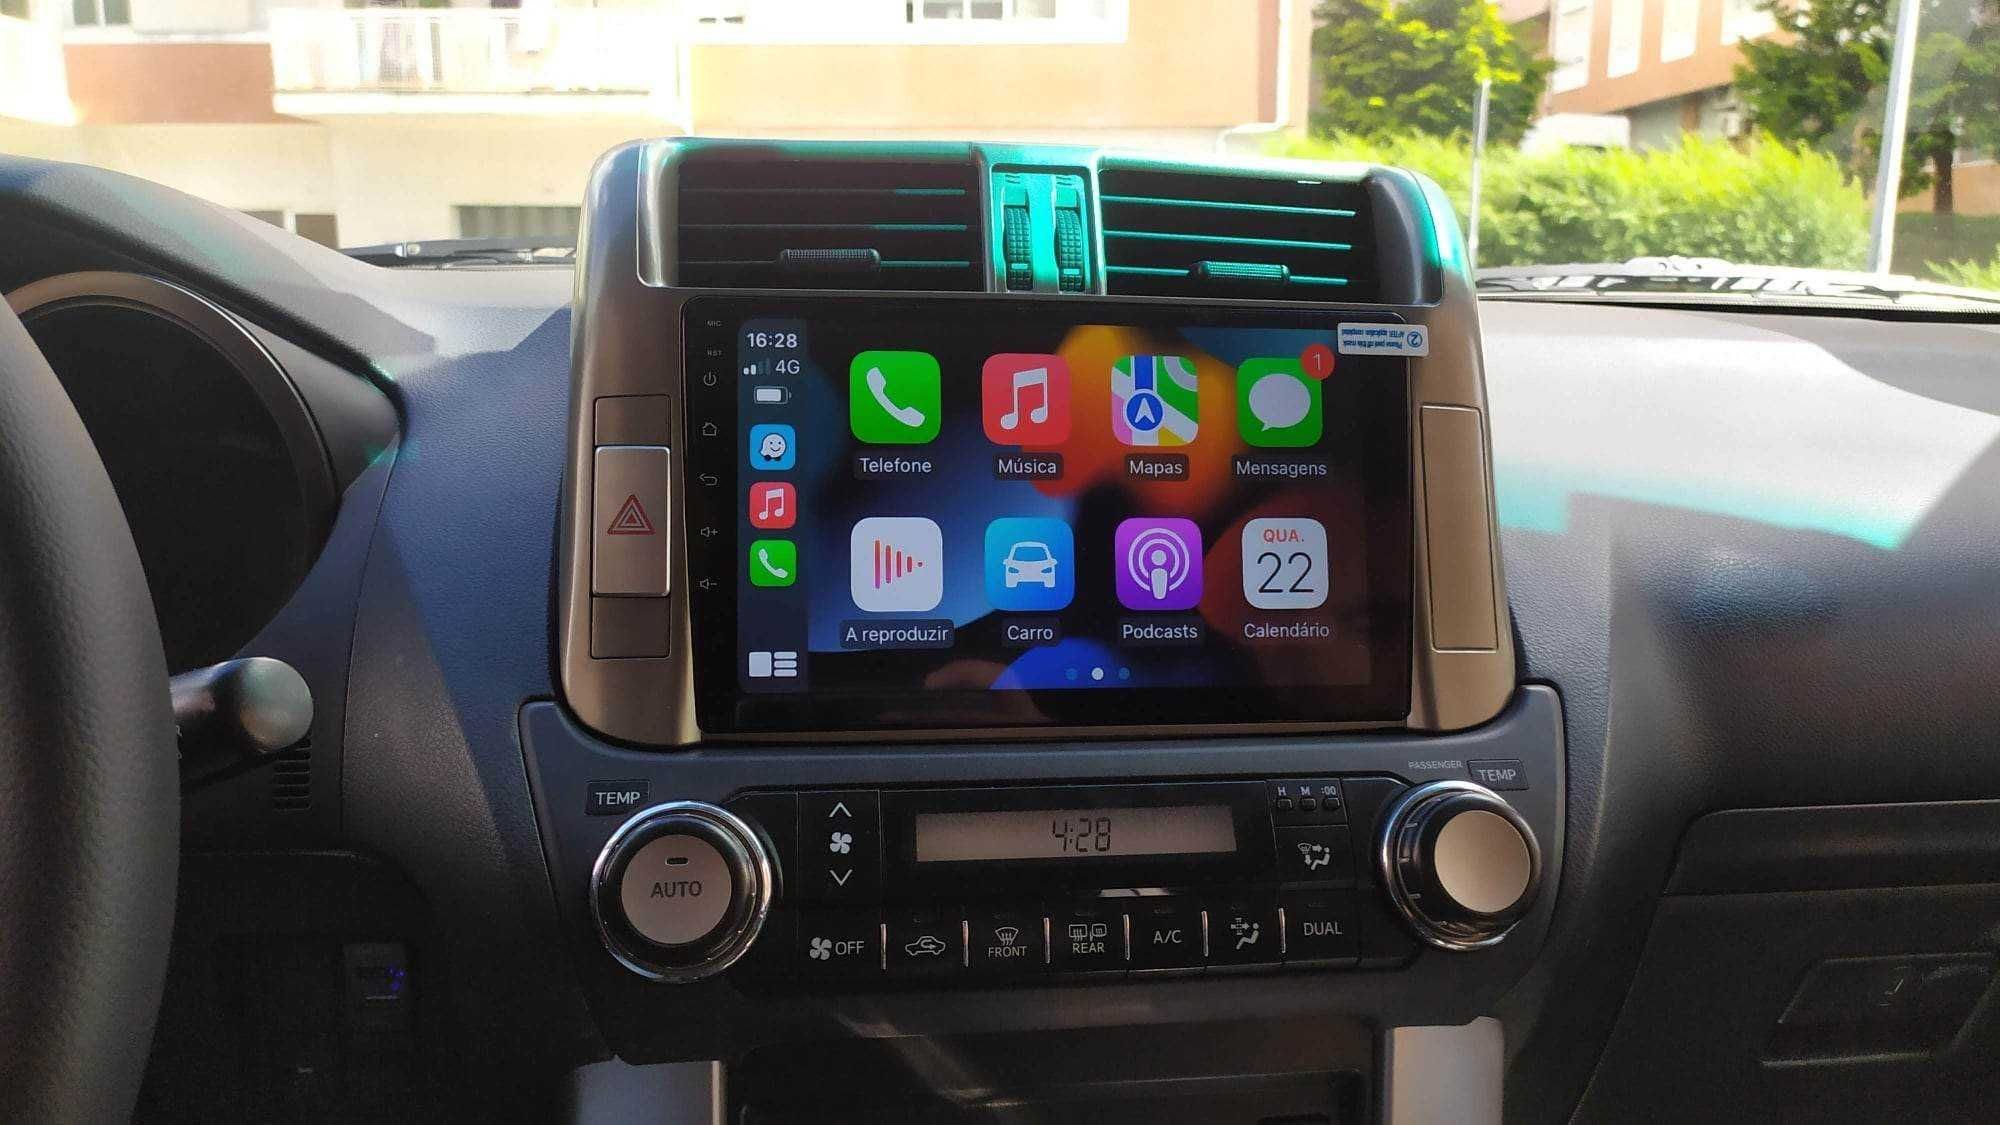 Auto Radio Toyota Prado * Android 2Din * 2009 a 2013